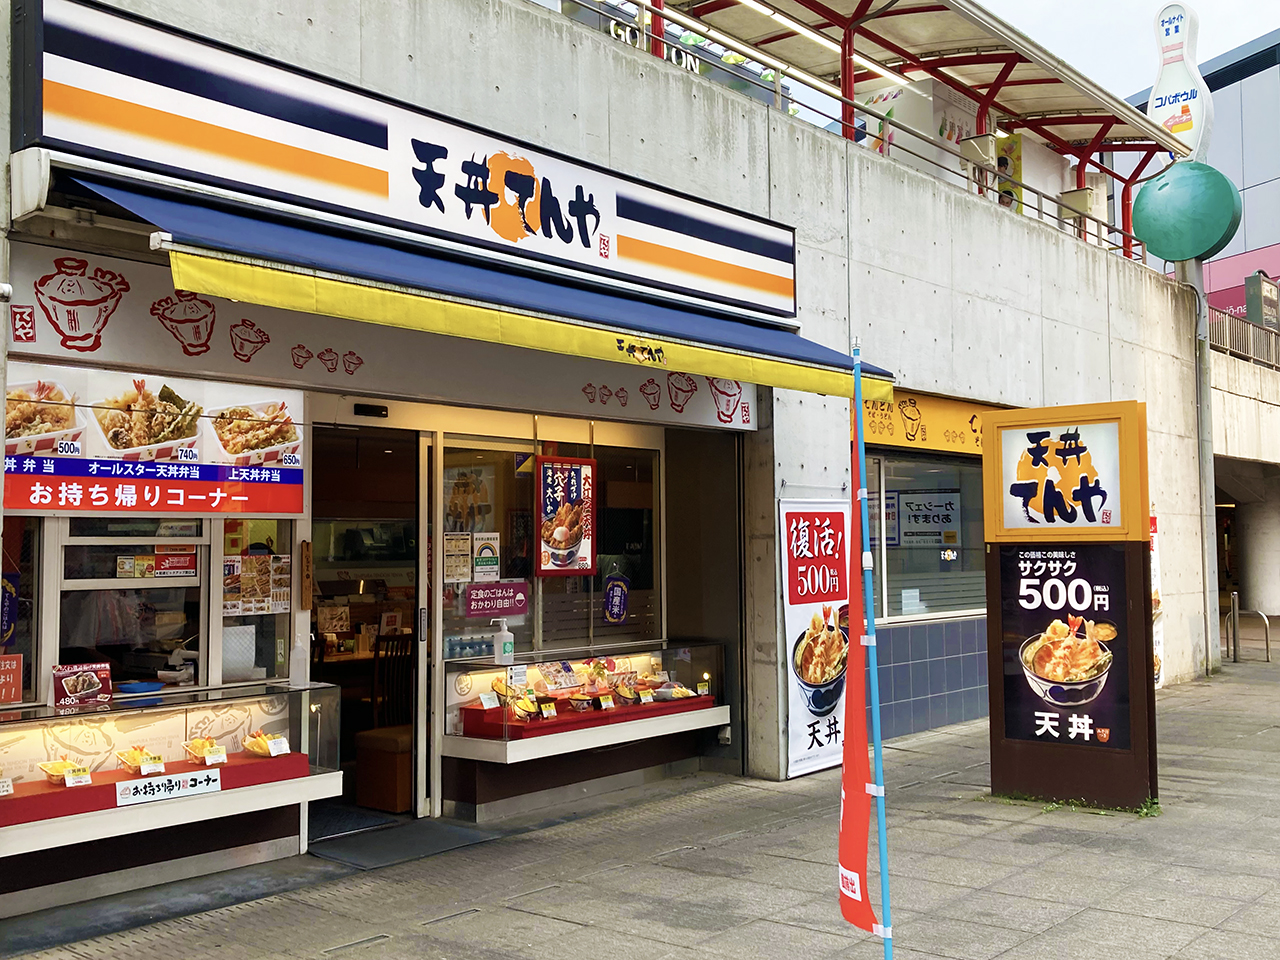 「てんや永山店」が8月31日をもって閉店するそうです